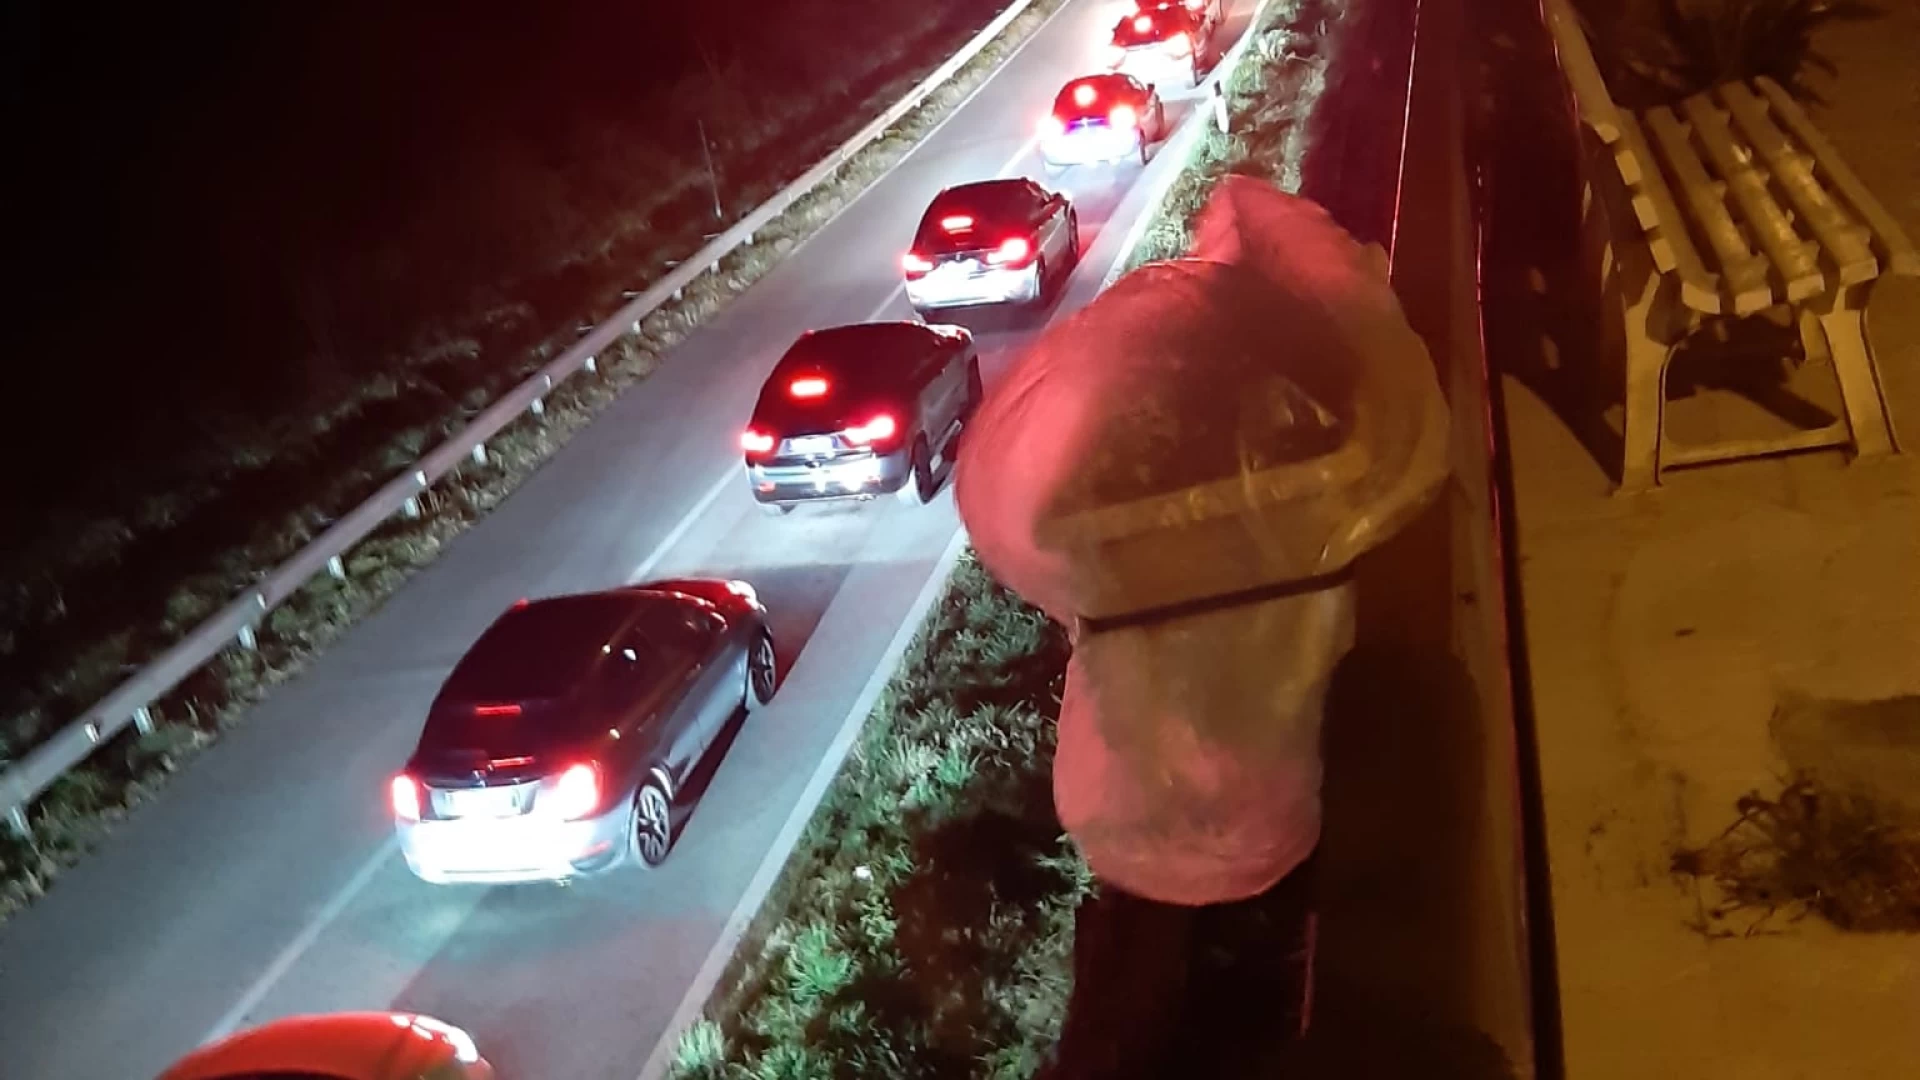 Rientro dall'Abruzzo,.traffico in tilt sulla statale 158. I residenti di Roccaravindola: "Abbiamo paura,le auto sfrecciano anche nelle vie interne del centro abitato".